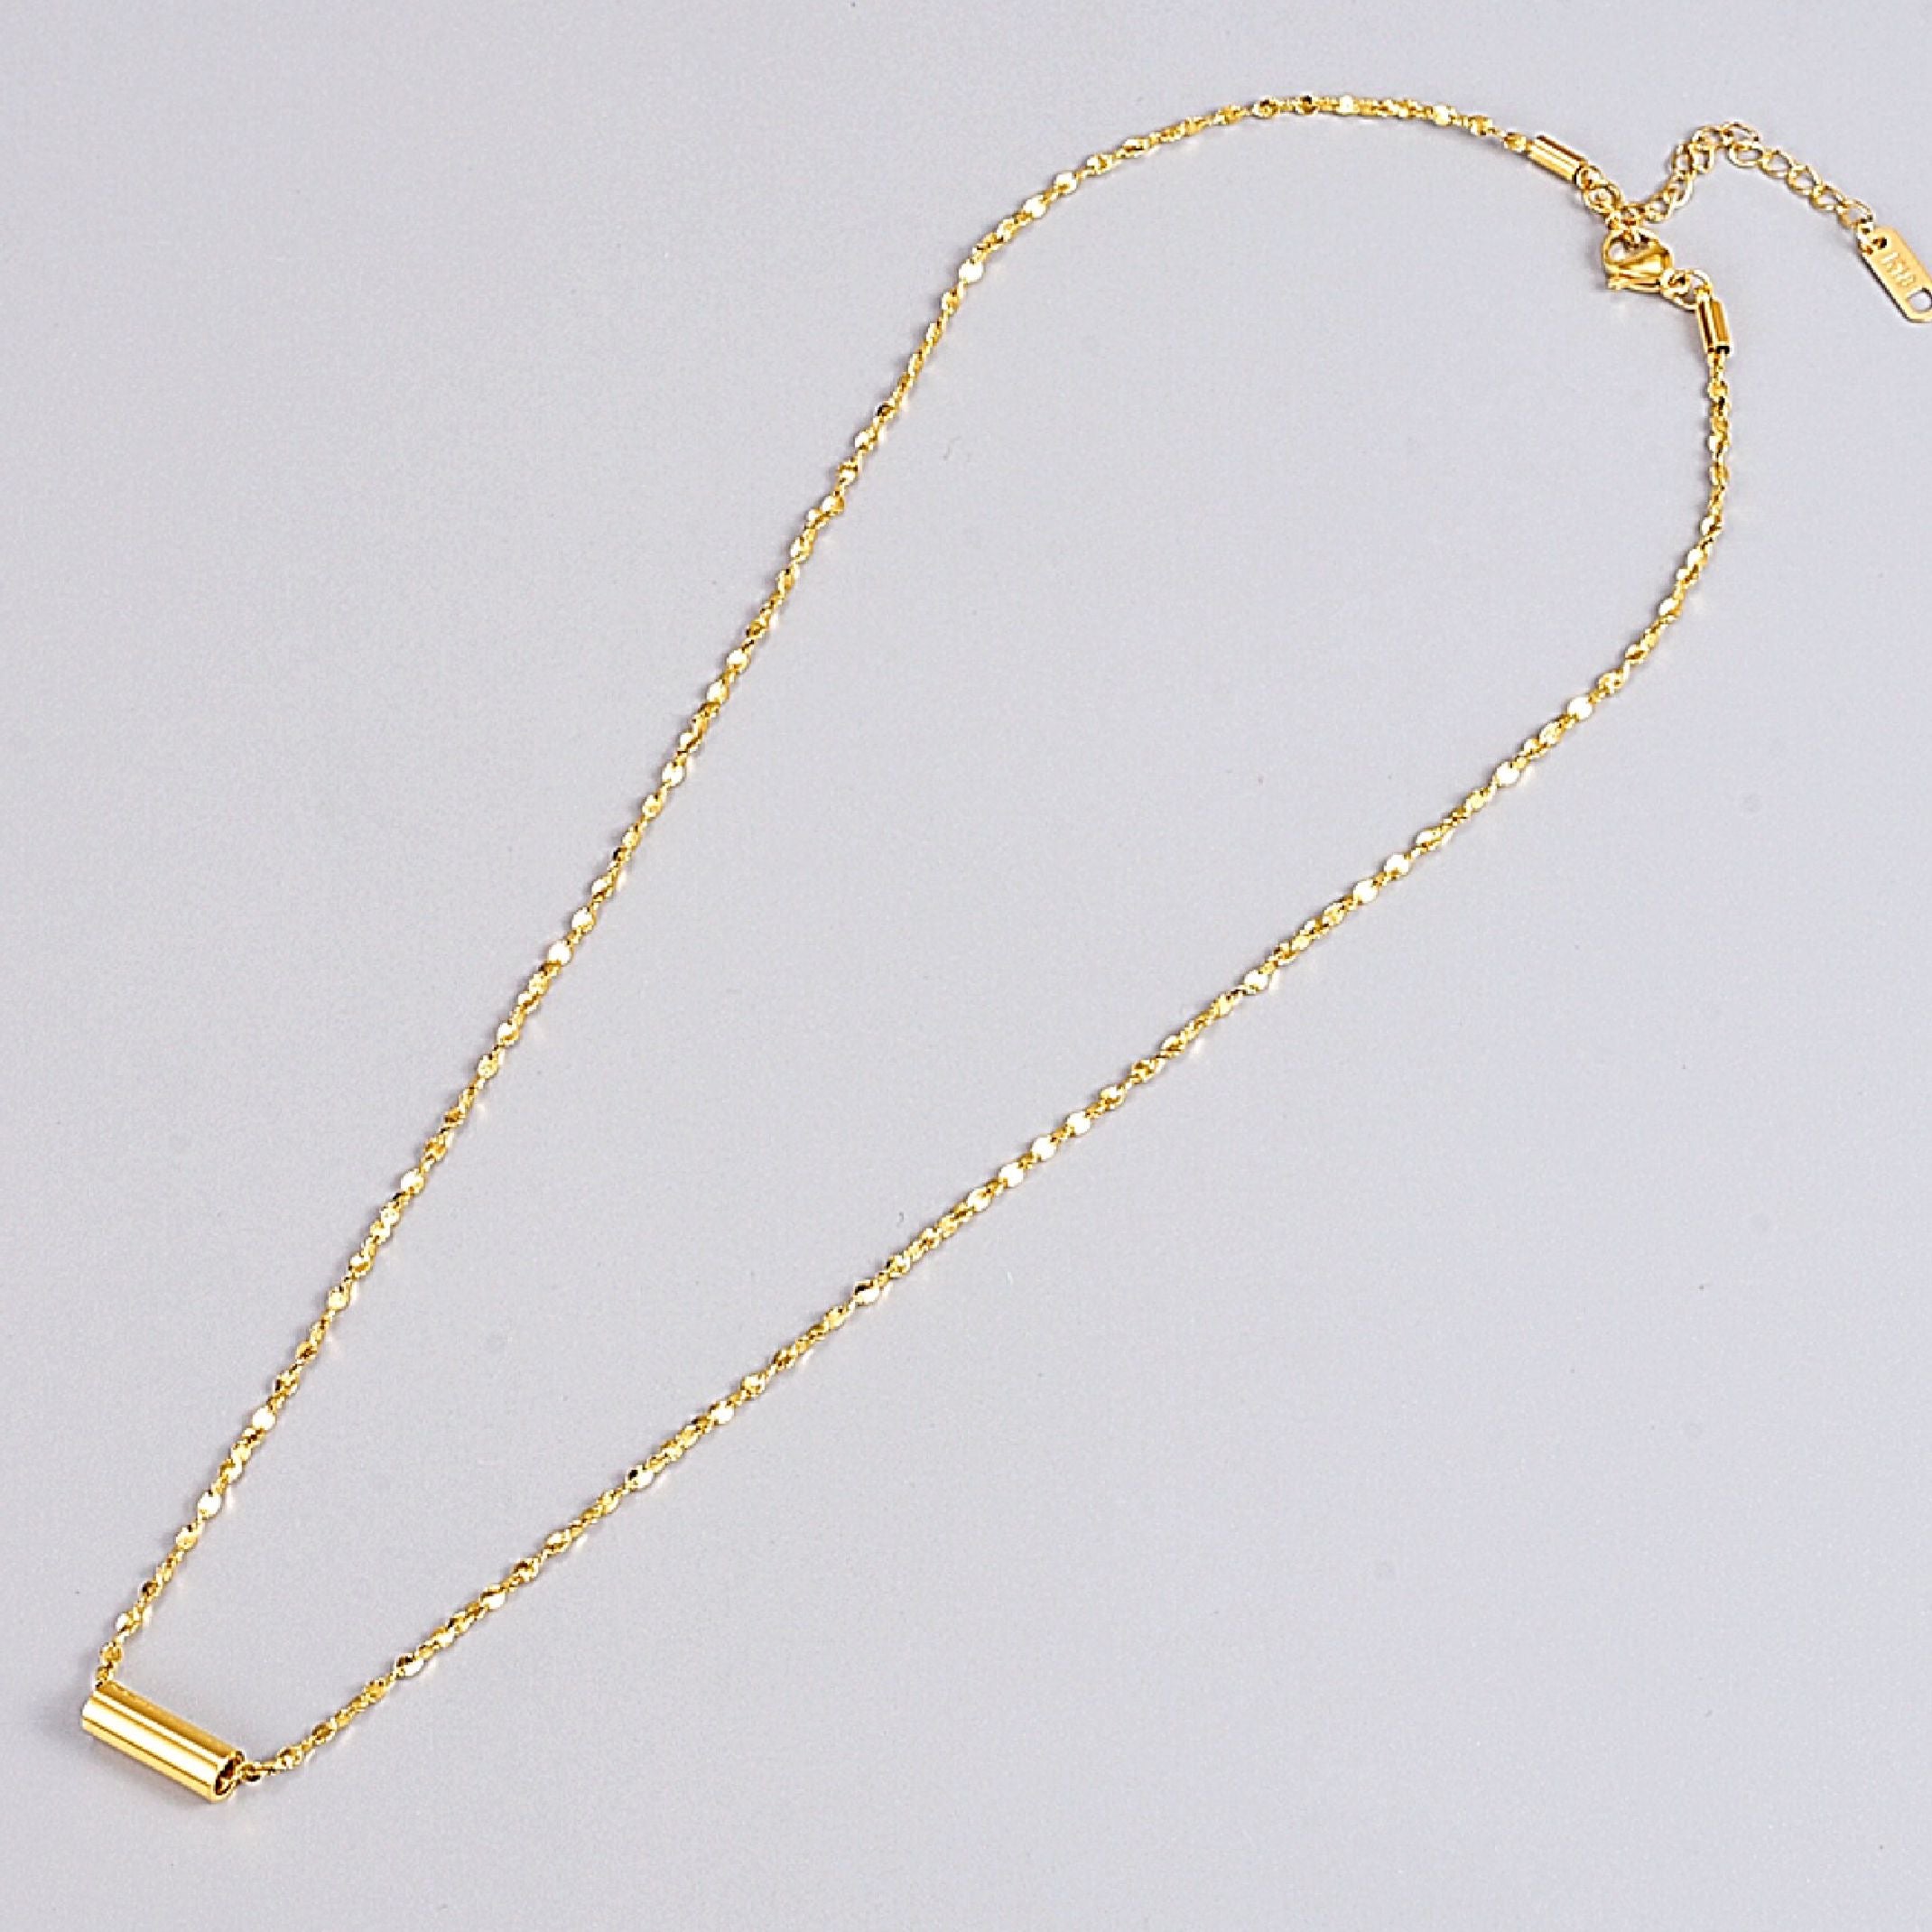 18k gold cylinder pendant necklace 